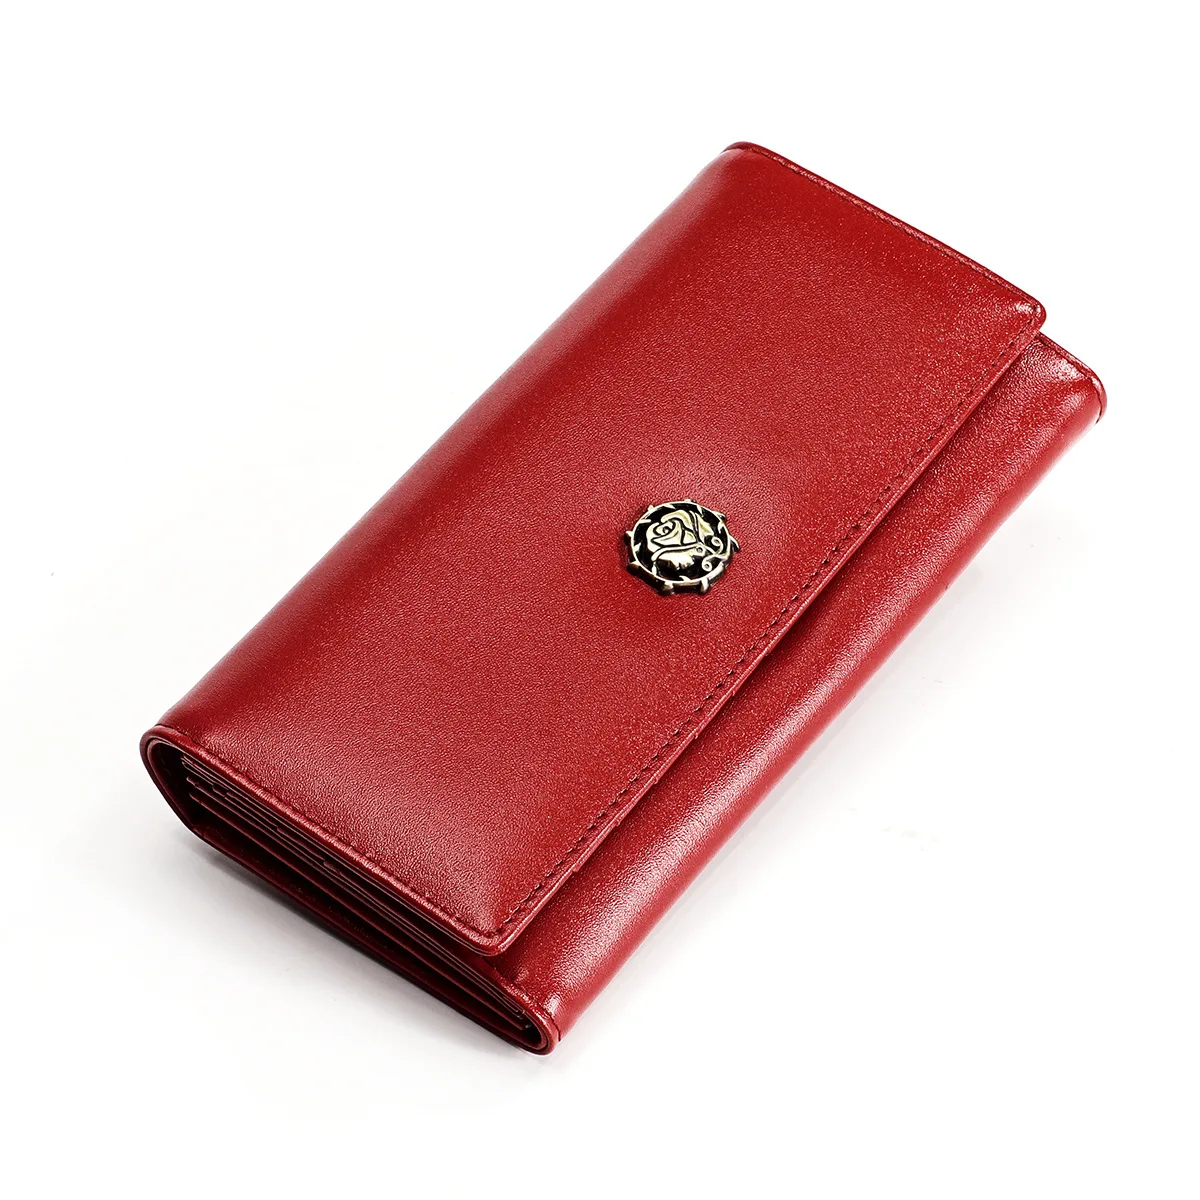 Top quality women's purse fashion wallet women multifunction leather wallet female long clutch women purse